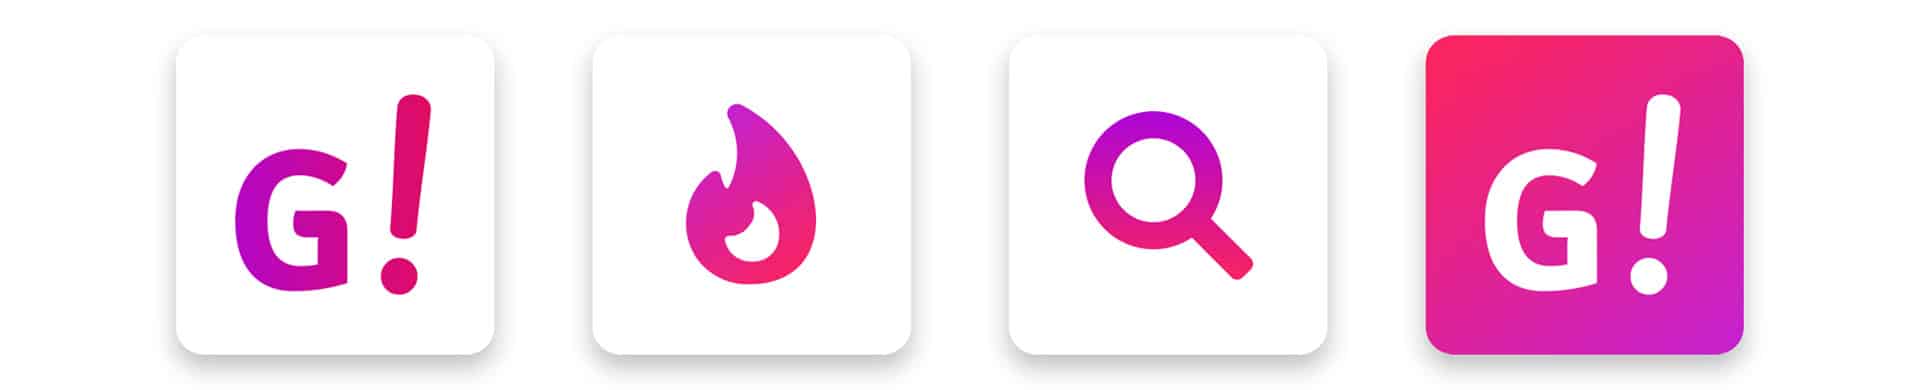 Goleasy App Icons